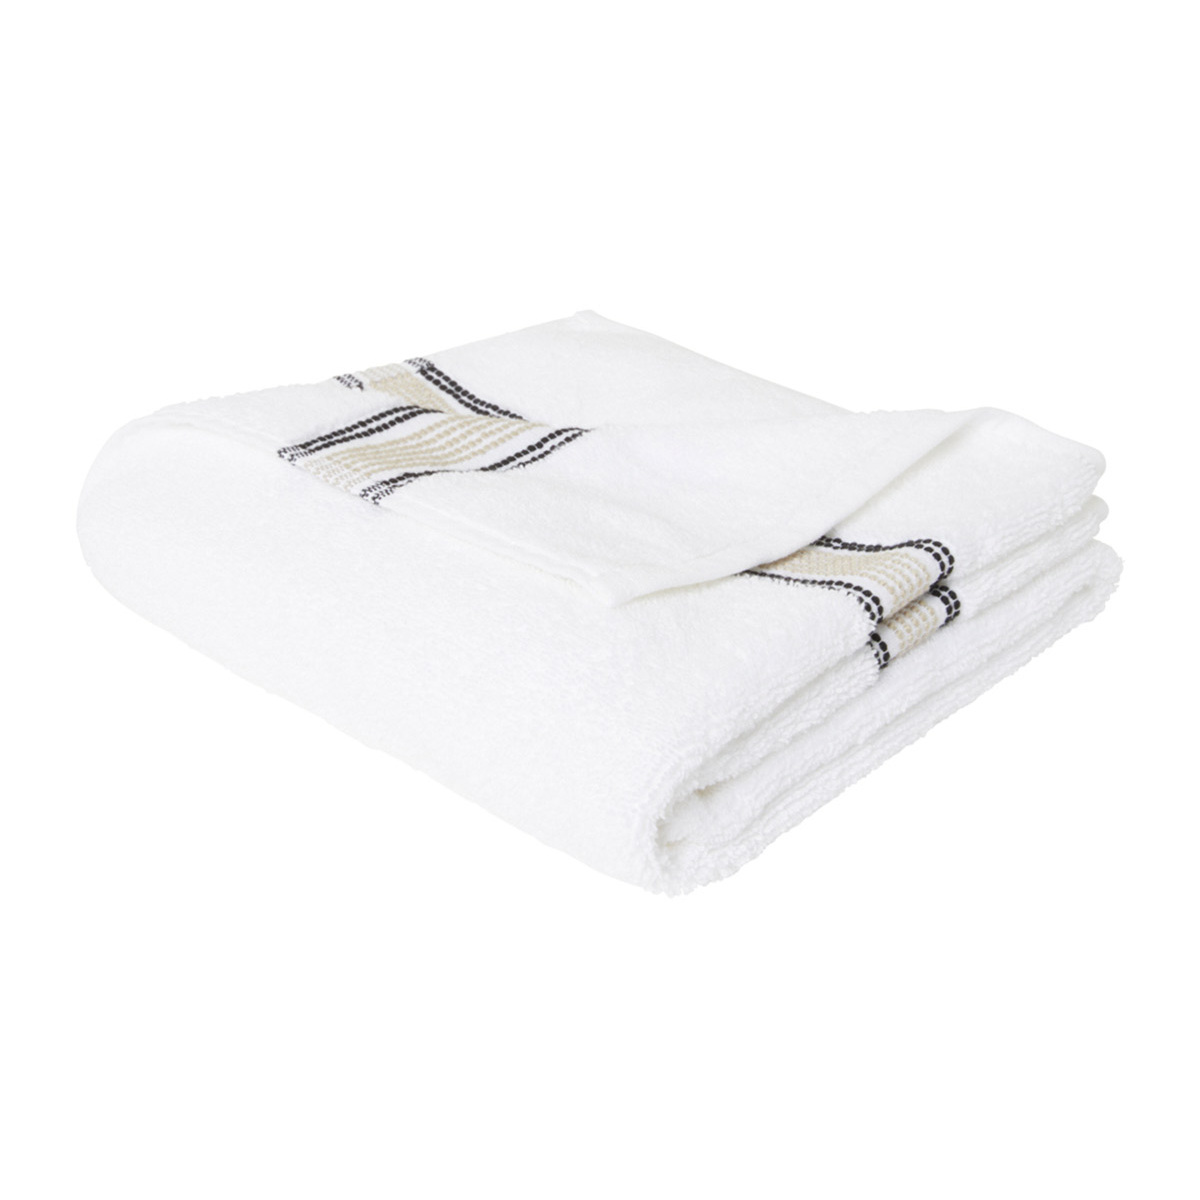 Towel Sicilia, Linen - different sizes - Organic cotton - image 1